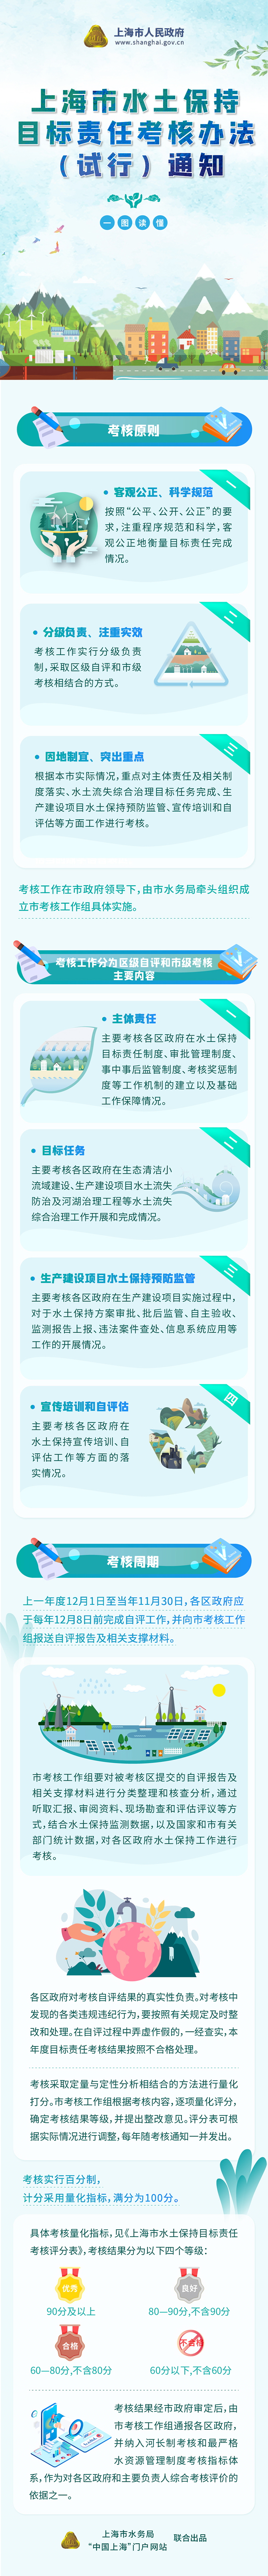 《上海市水土保持目标责任考核办法（试行）》政策图解.jpg